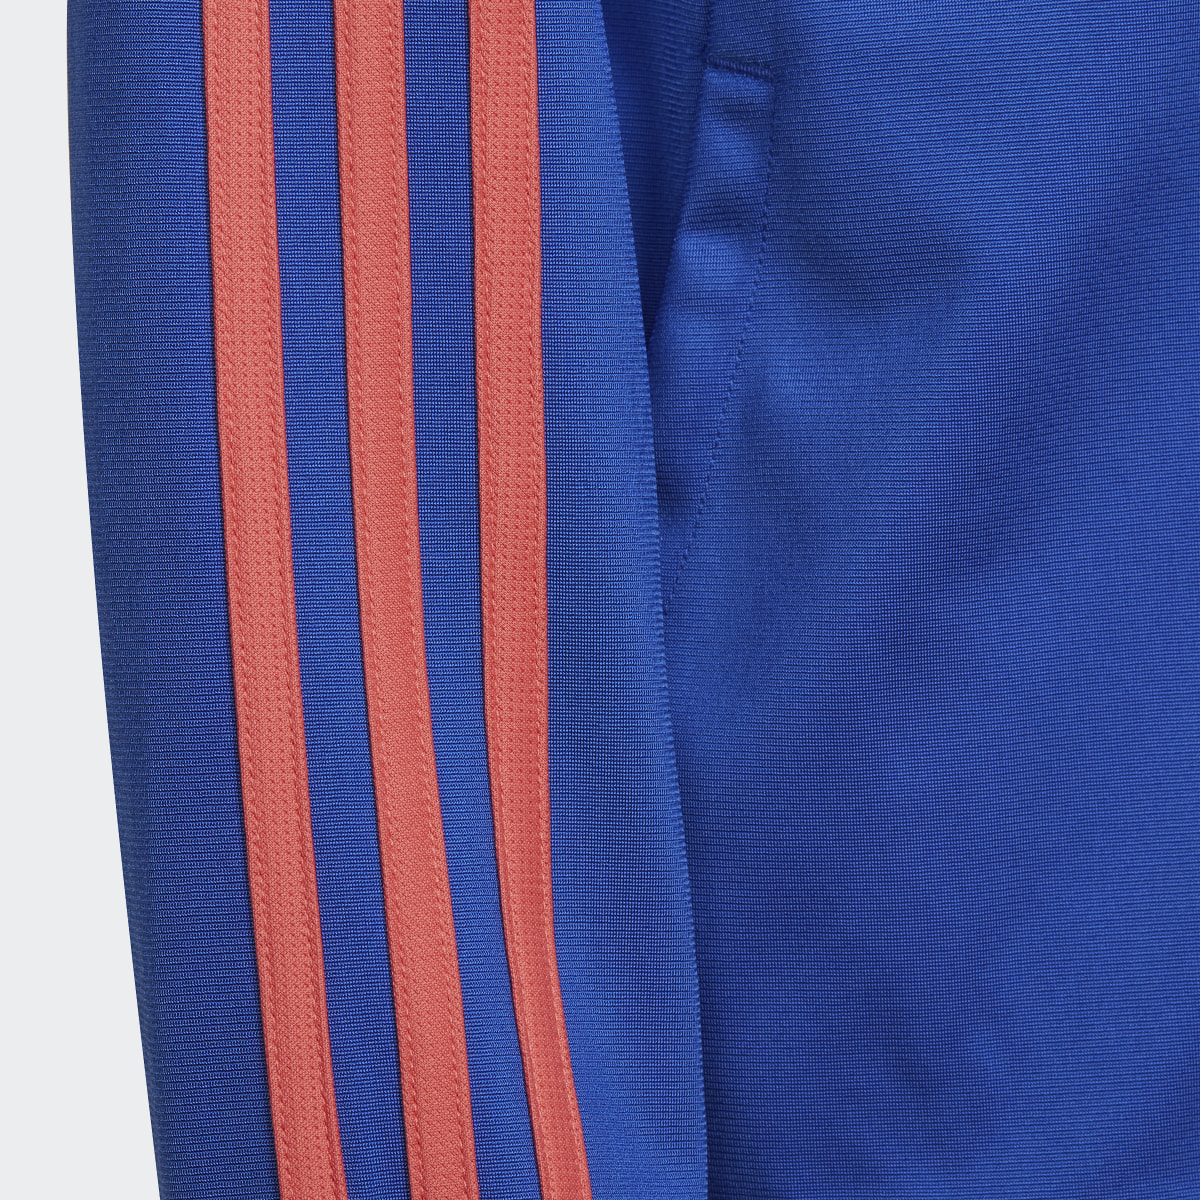 Adidas 3-Stripes Team Track Suit. 8